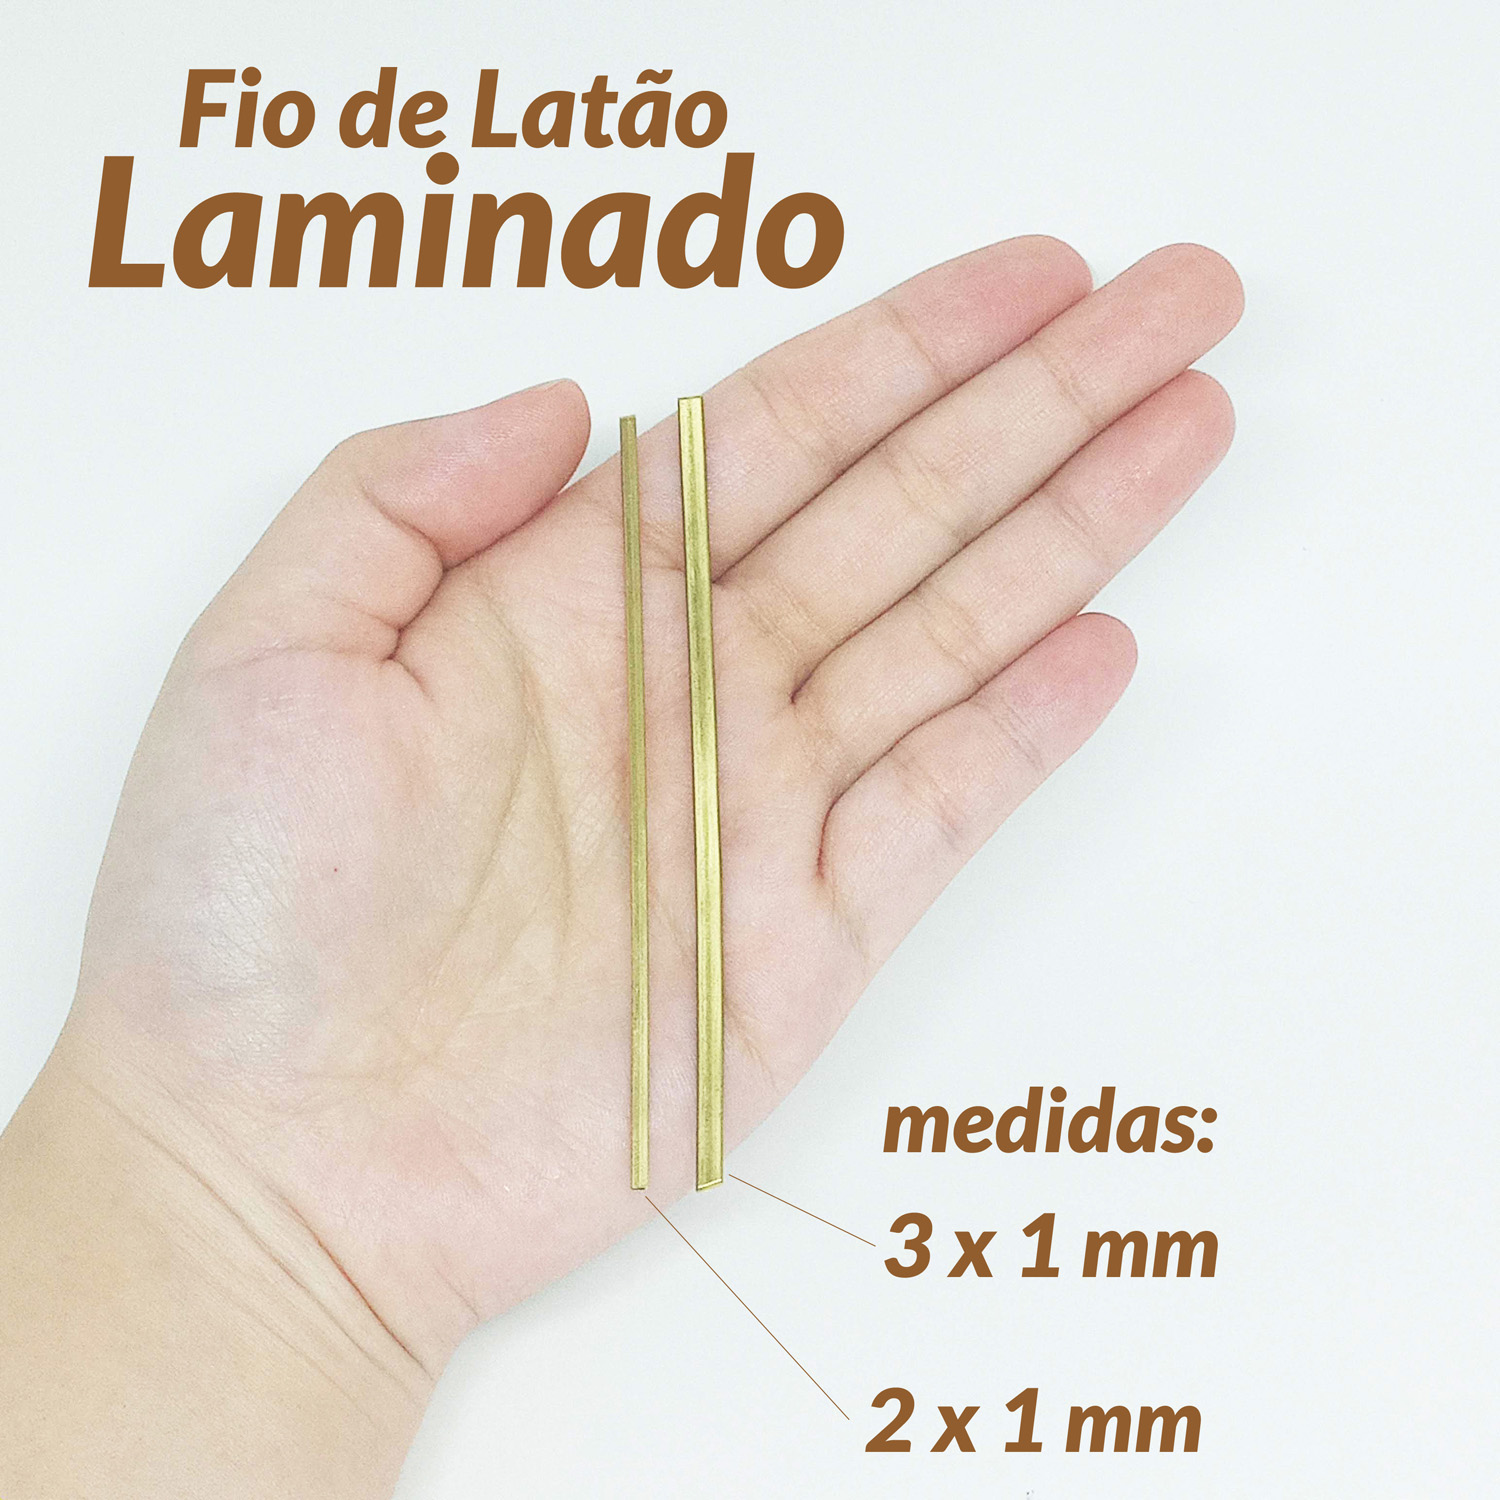 01-910182-FIO DE LATÃO LAMINADO 3X1 1KG